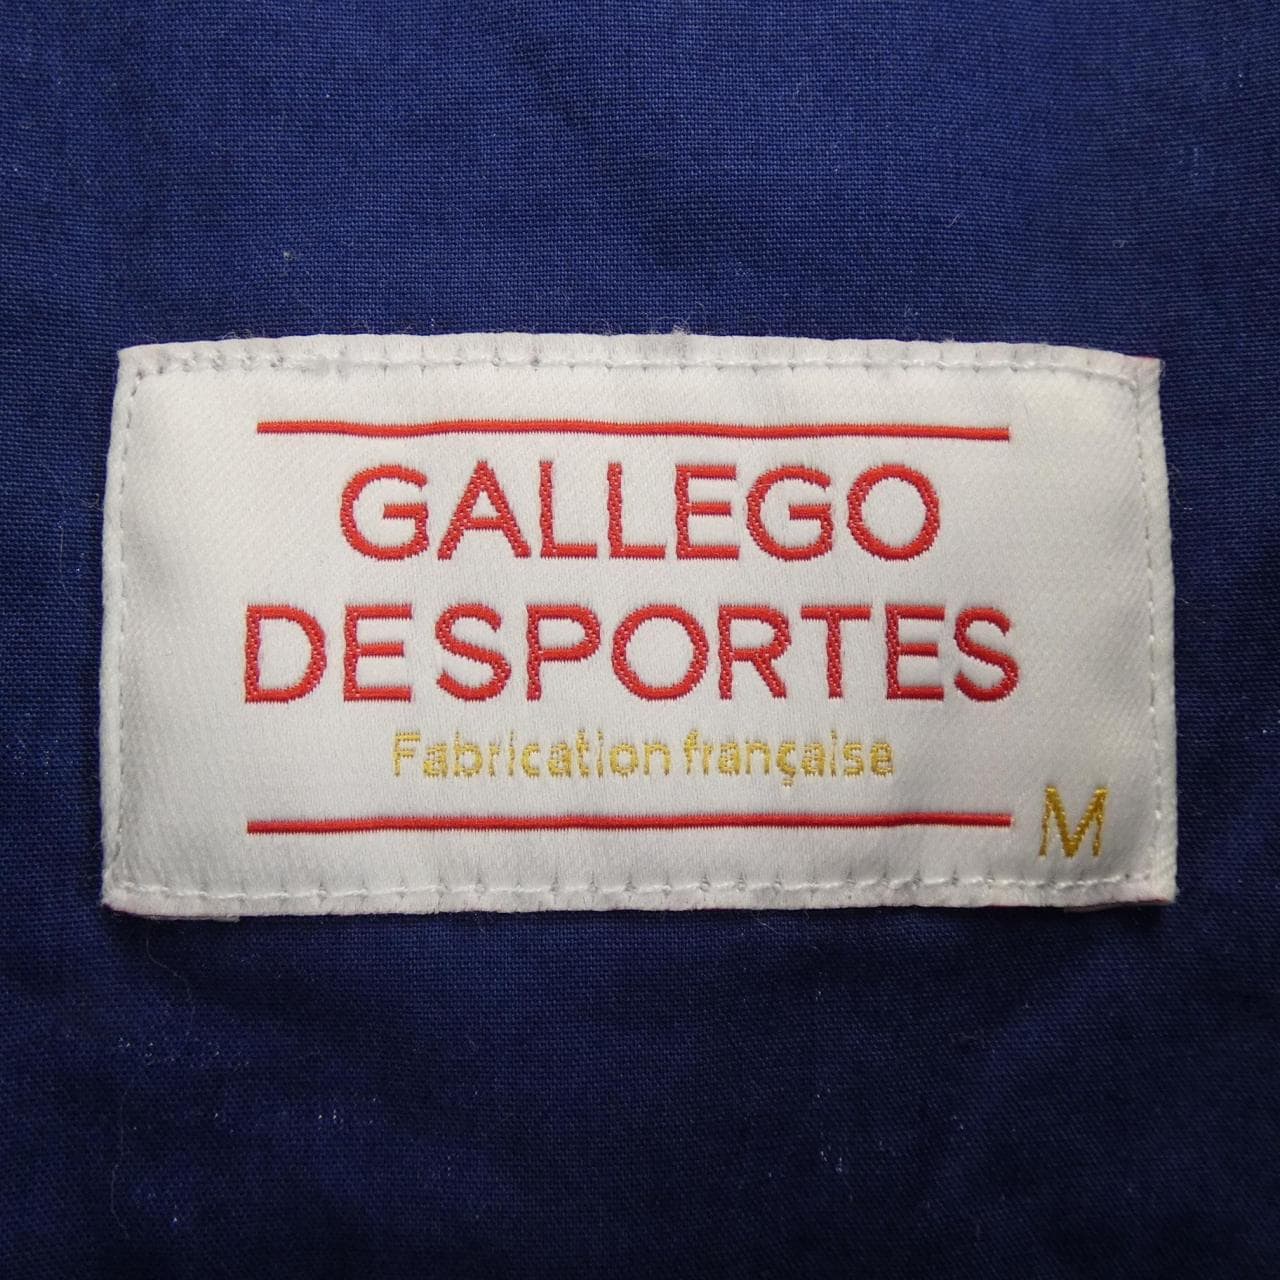 GALLEGO DESPORTES shirt